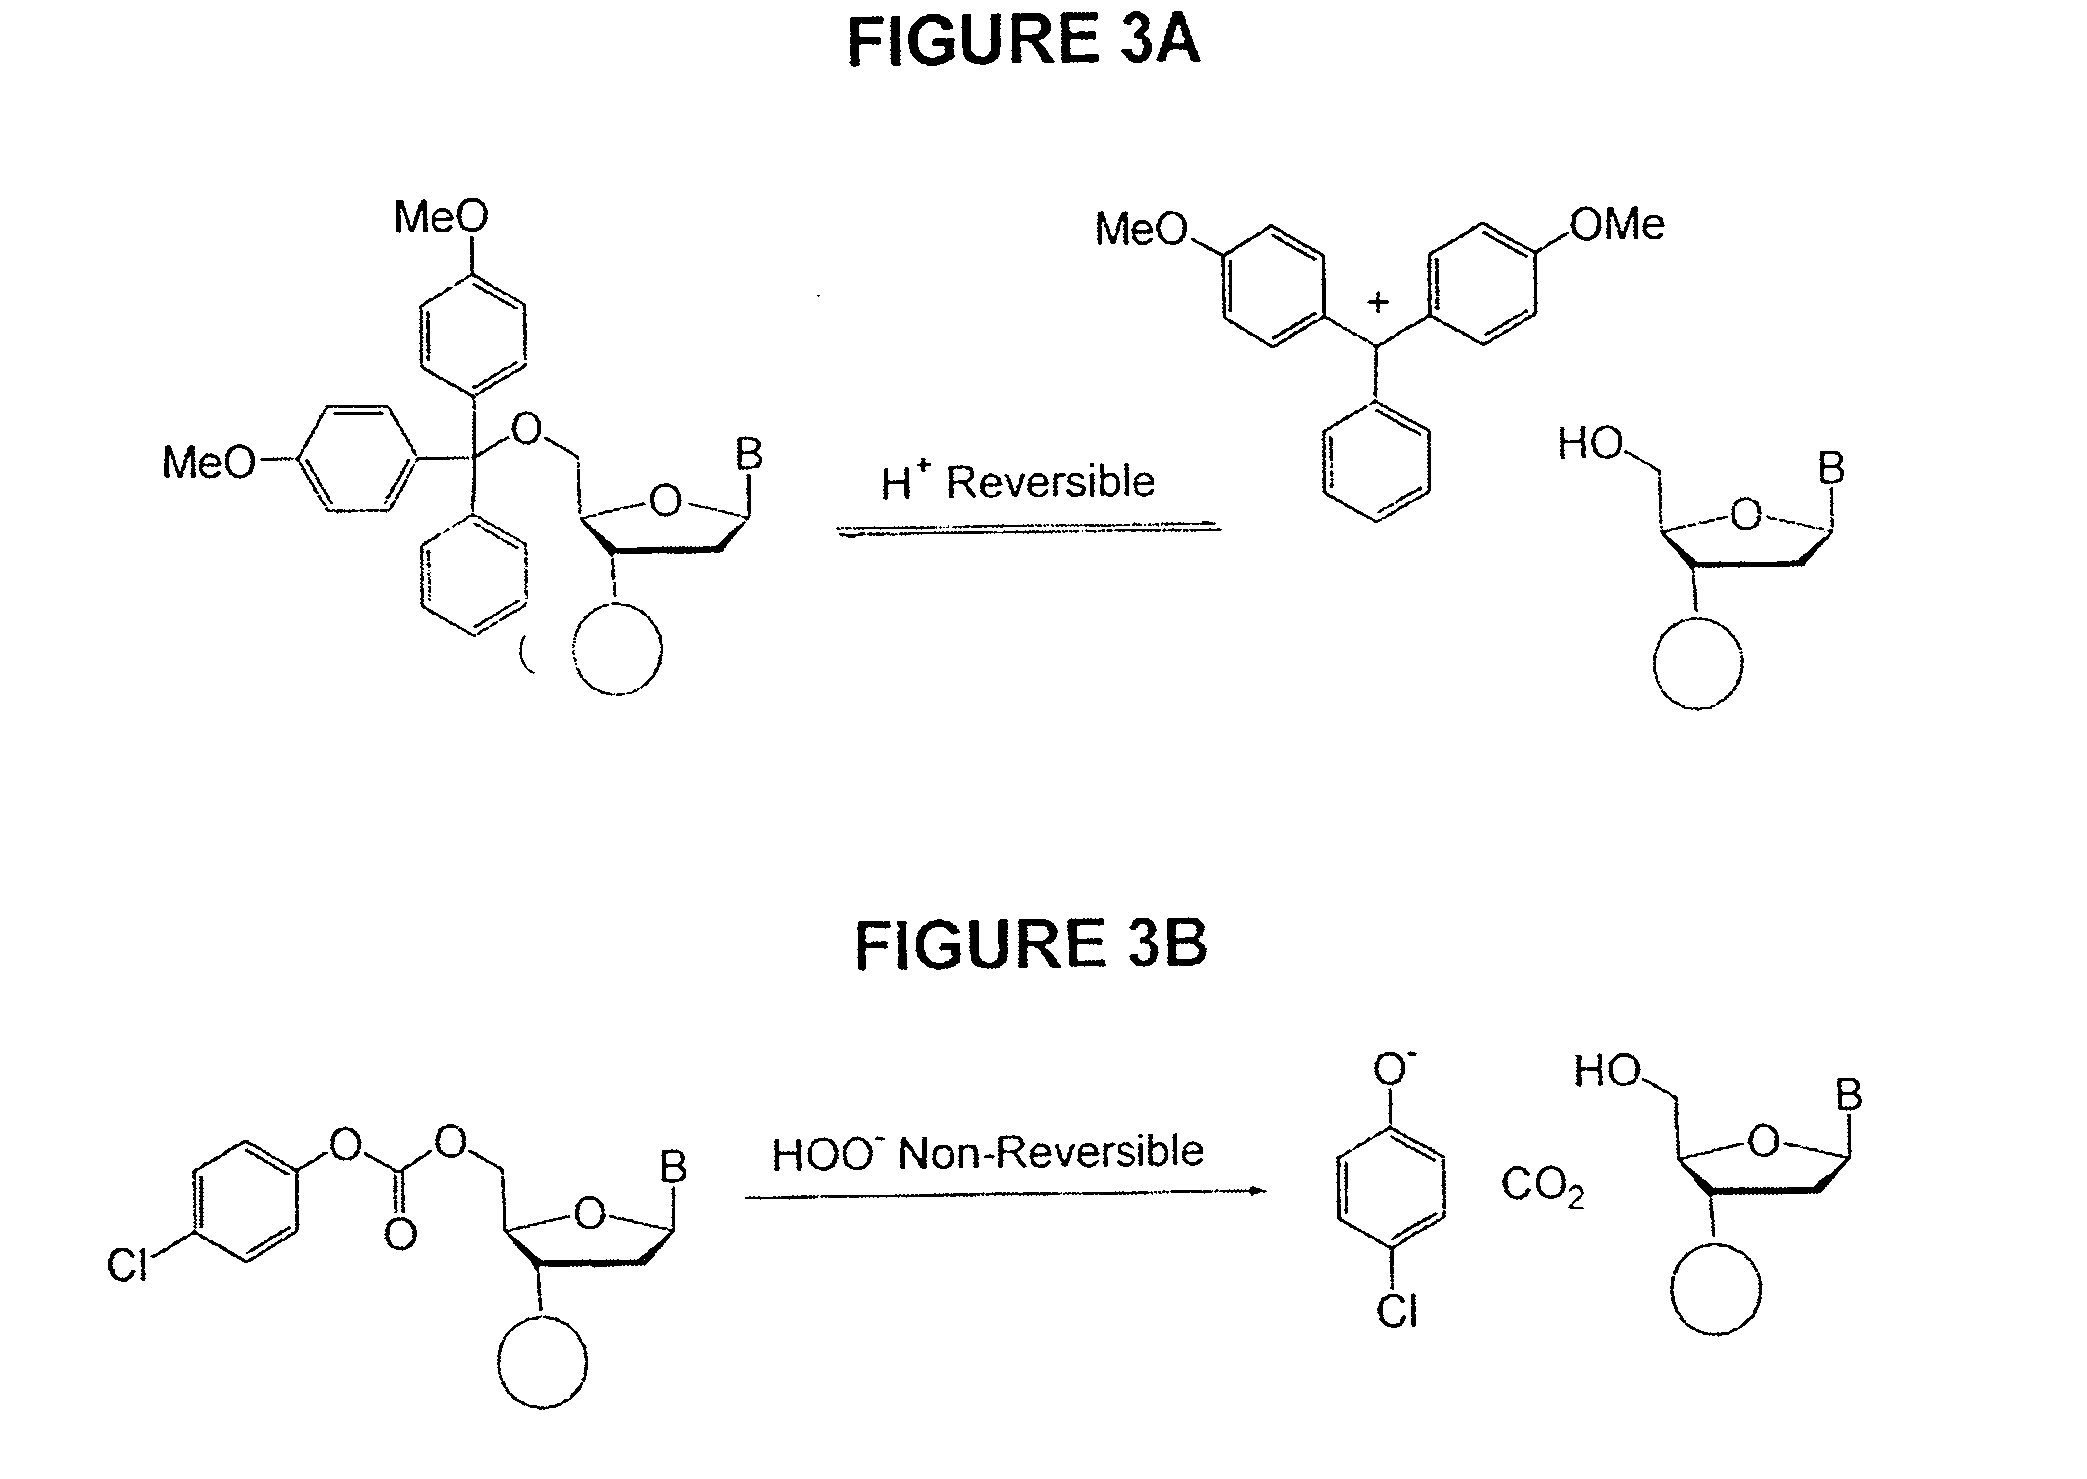 Methods of synthesizing oligonucleotides using carbonate protecting groups and alpha-effect nucleophile deprotection